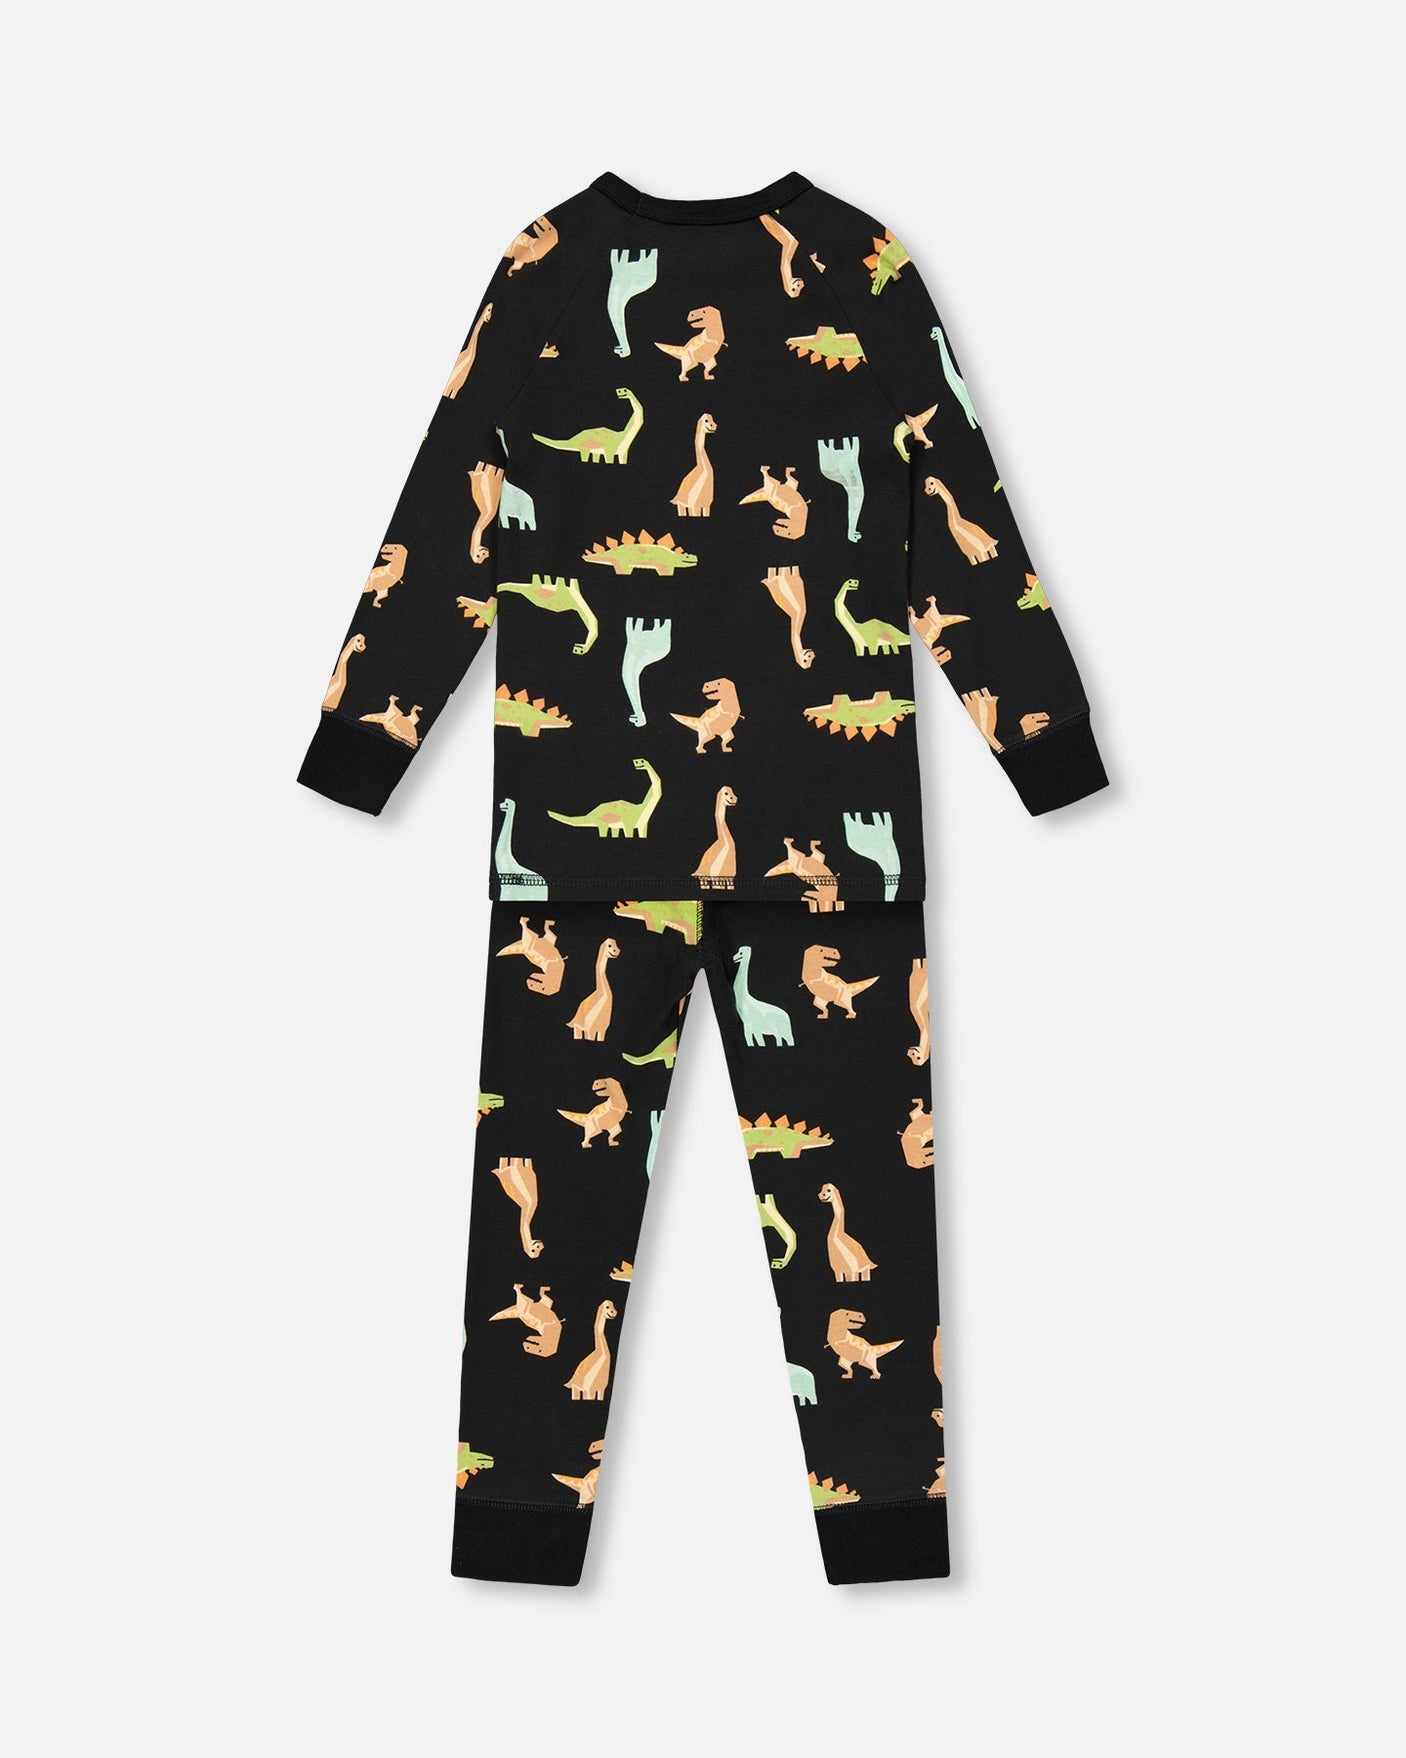 Organic Cotton Two Piece Pajama Set Black With Dinosaurs Print-3